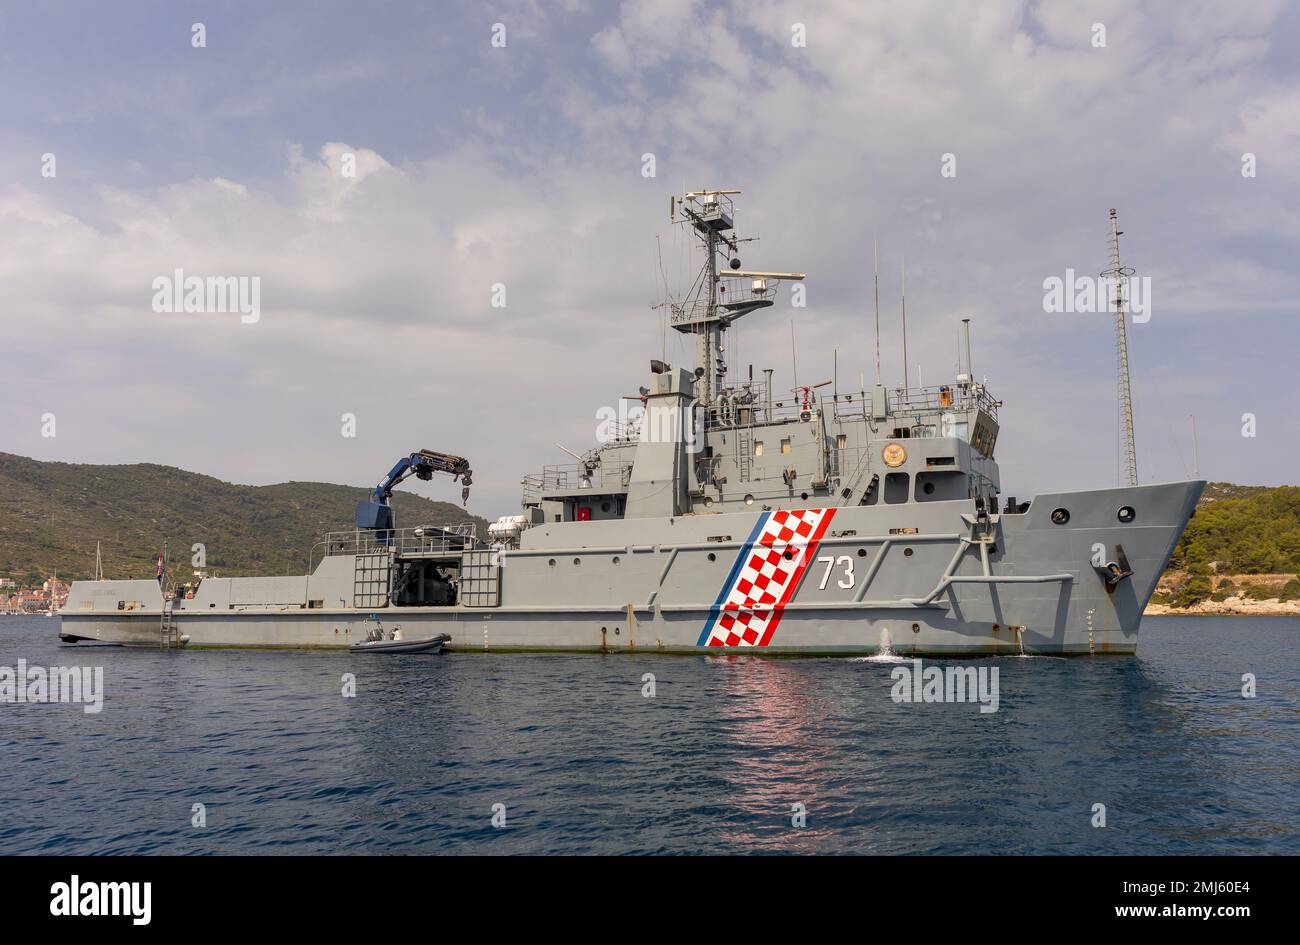 VIS, CROATIE, EUROPE - HRM Faust Vrancic BS73, un navire de la marine croate dans le port de vis, mer Adriatique. Banque D'Images